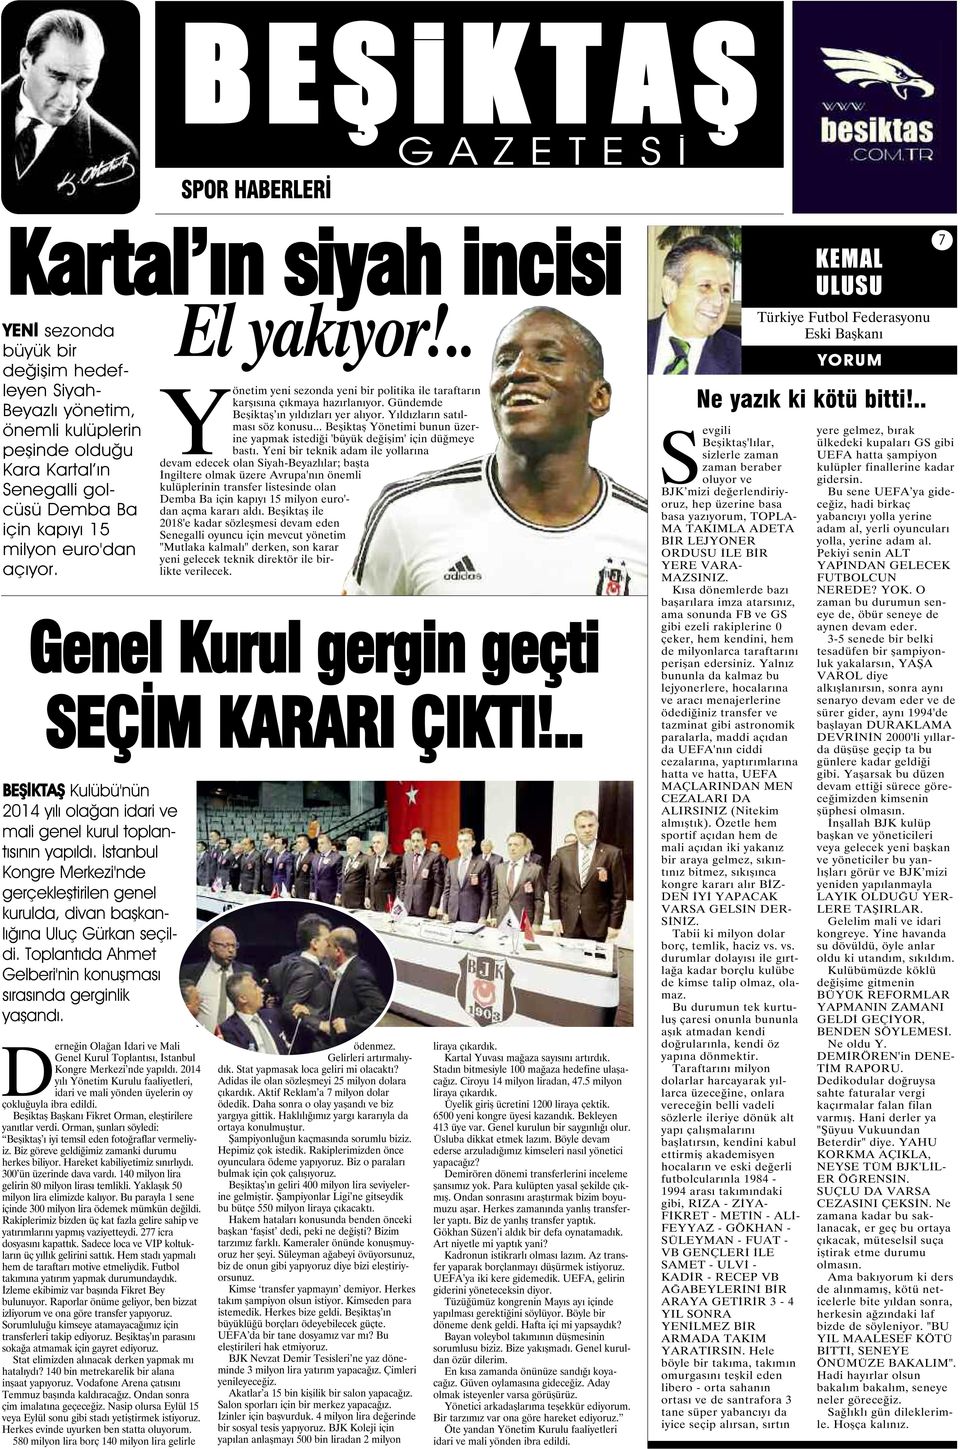 2014 yılı Yönetim Kurulu faaliyetleri, idari ve mali yönden üyelerin oy çokluğuyla ibra edildi. Beşiktaş Başkanı Fikret Orman, eleştirilere yanıtlar verdi.